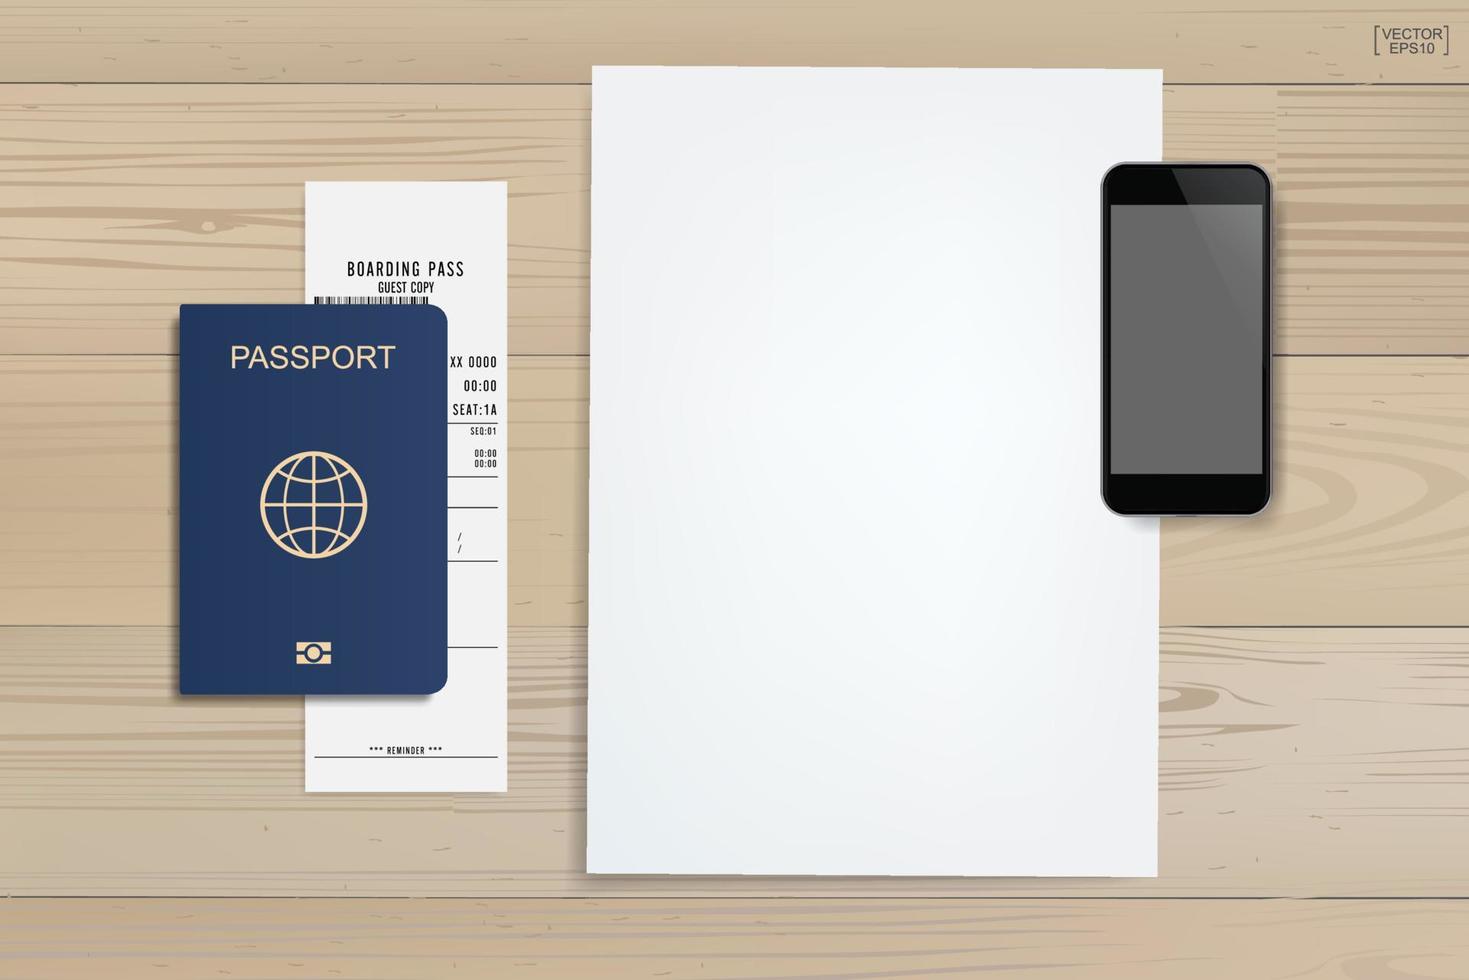 fundo de papel branco com smartphone, passaporte e bilhete em fundo de madeira. plano de fundo para o turismo e a ideia de viajar. vetor. vetor